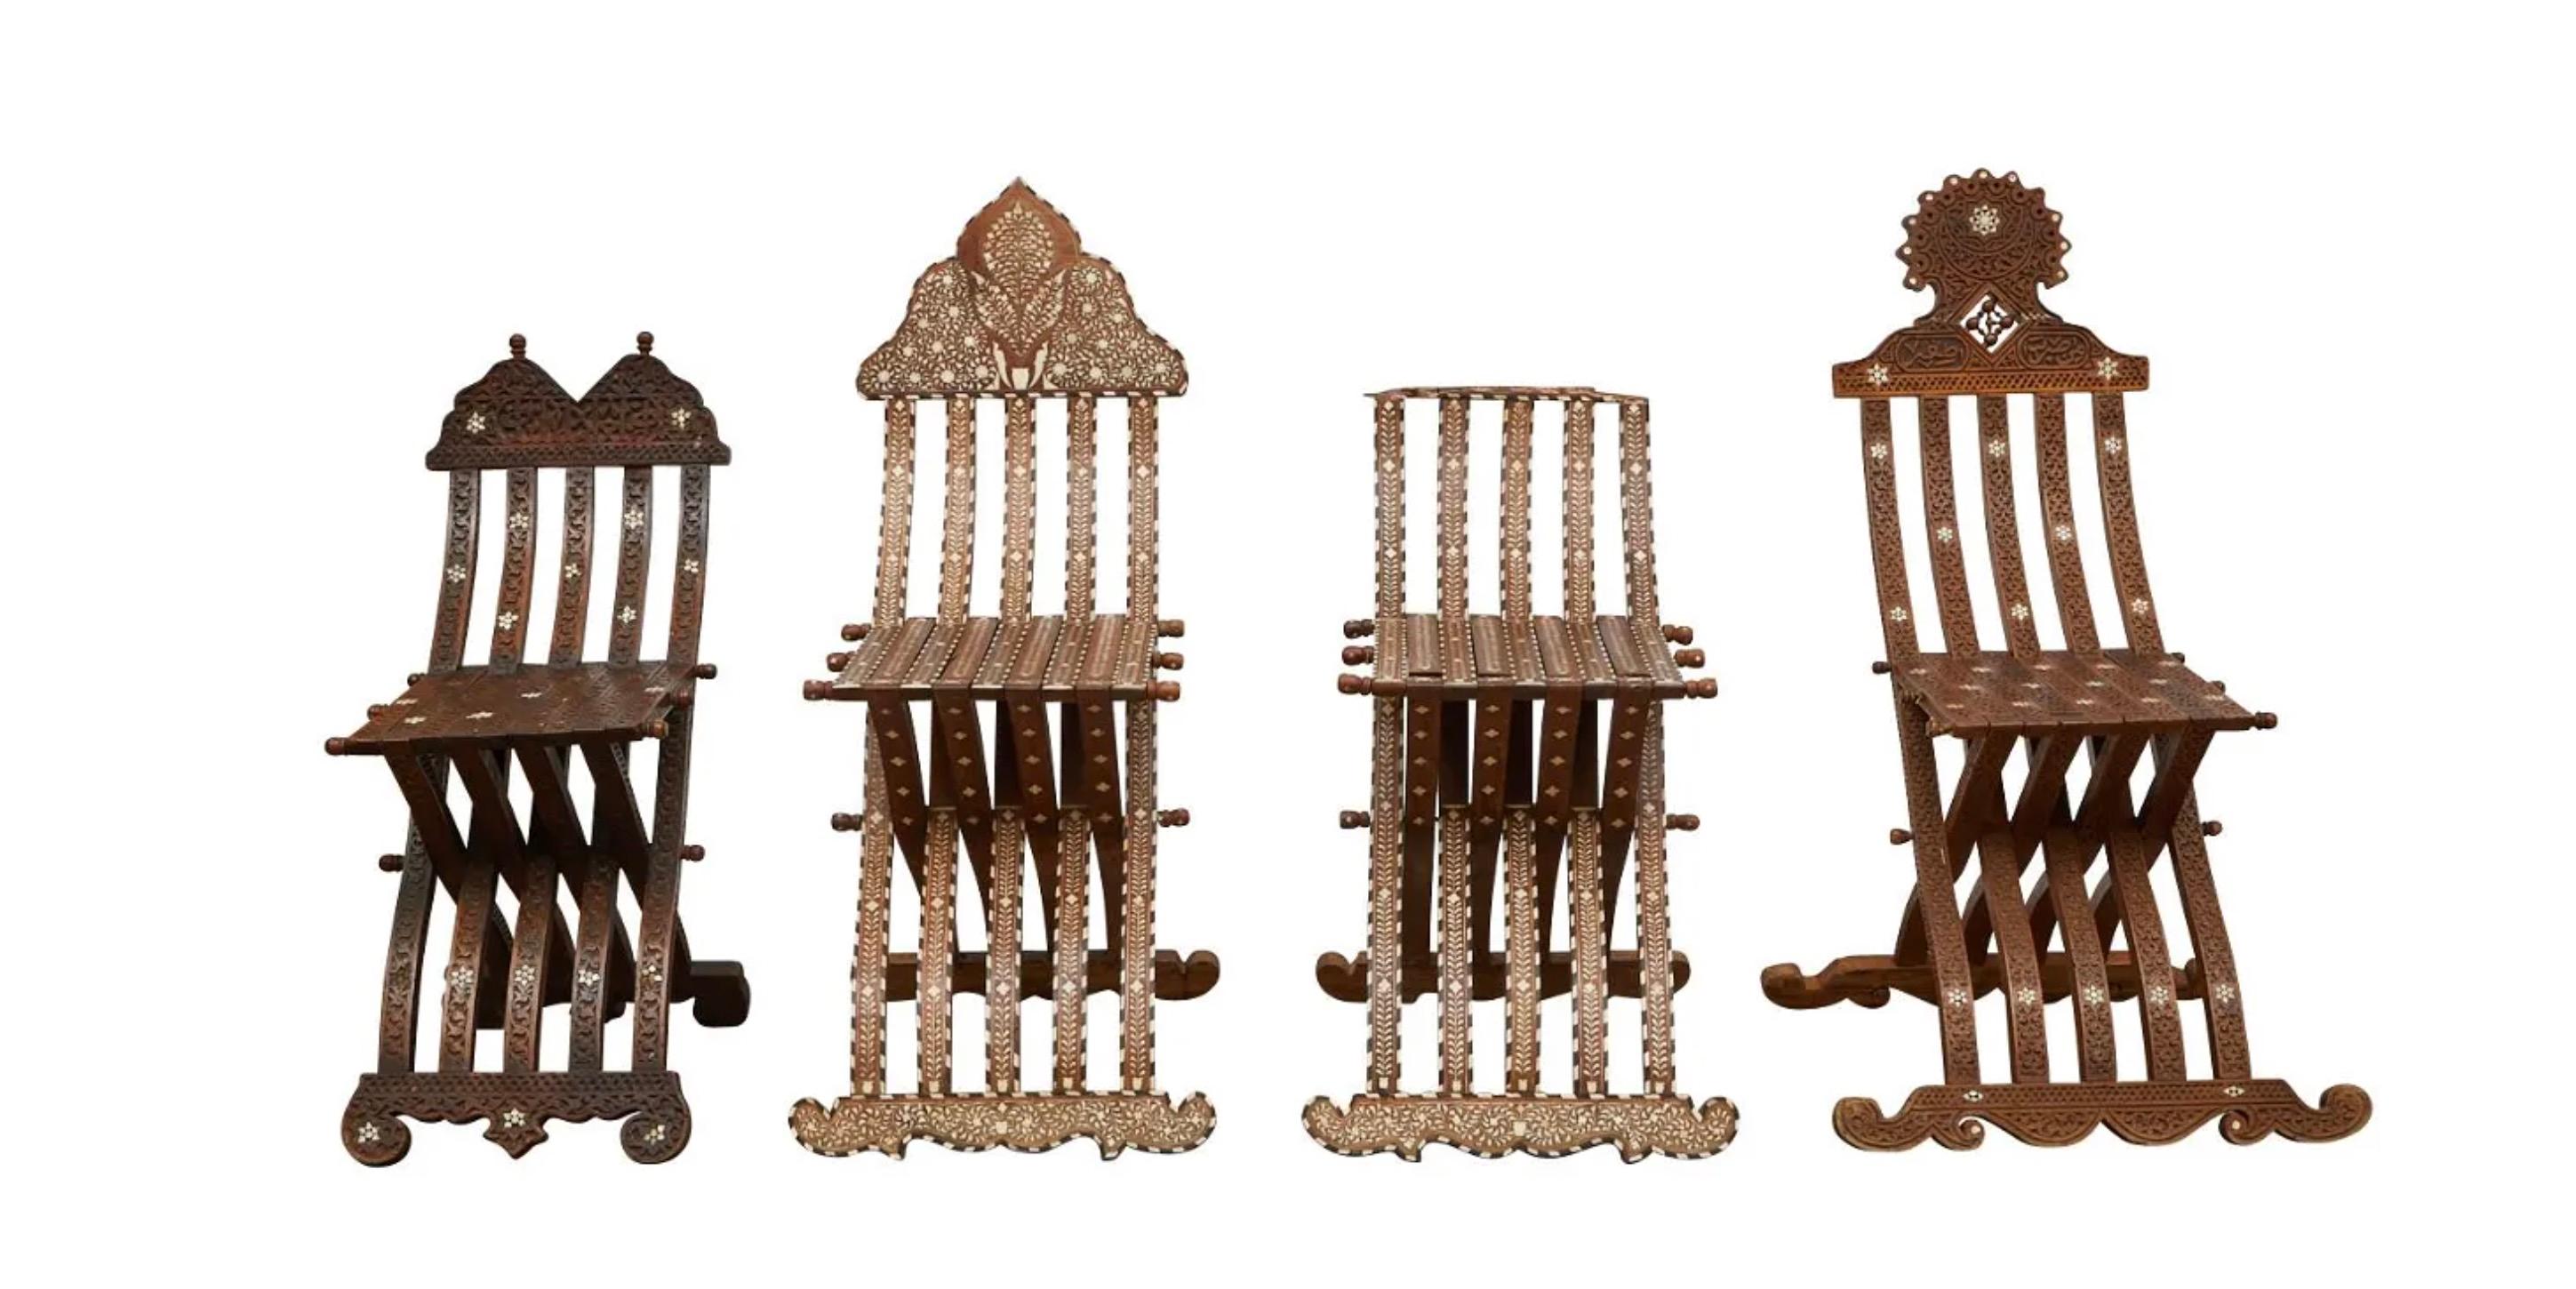 Gruppe von vier syrischen Holzklappstühlen mit Perlmuttintarsien, darunter ein passendes Paar. Das geschnitzte Holz ist mit komplizierten geometrischen und floralen Mustern aus Perlmutt mit der Intarsienmethode eingelegt.

Provenienz: Aus dem